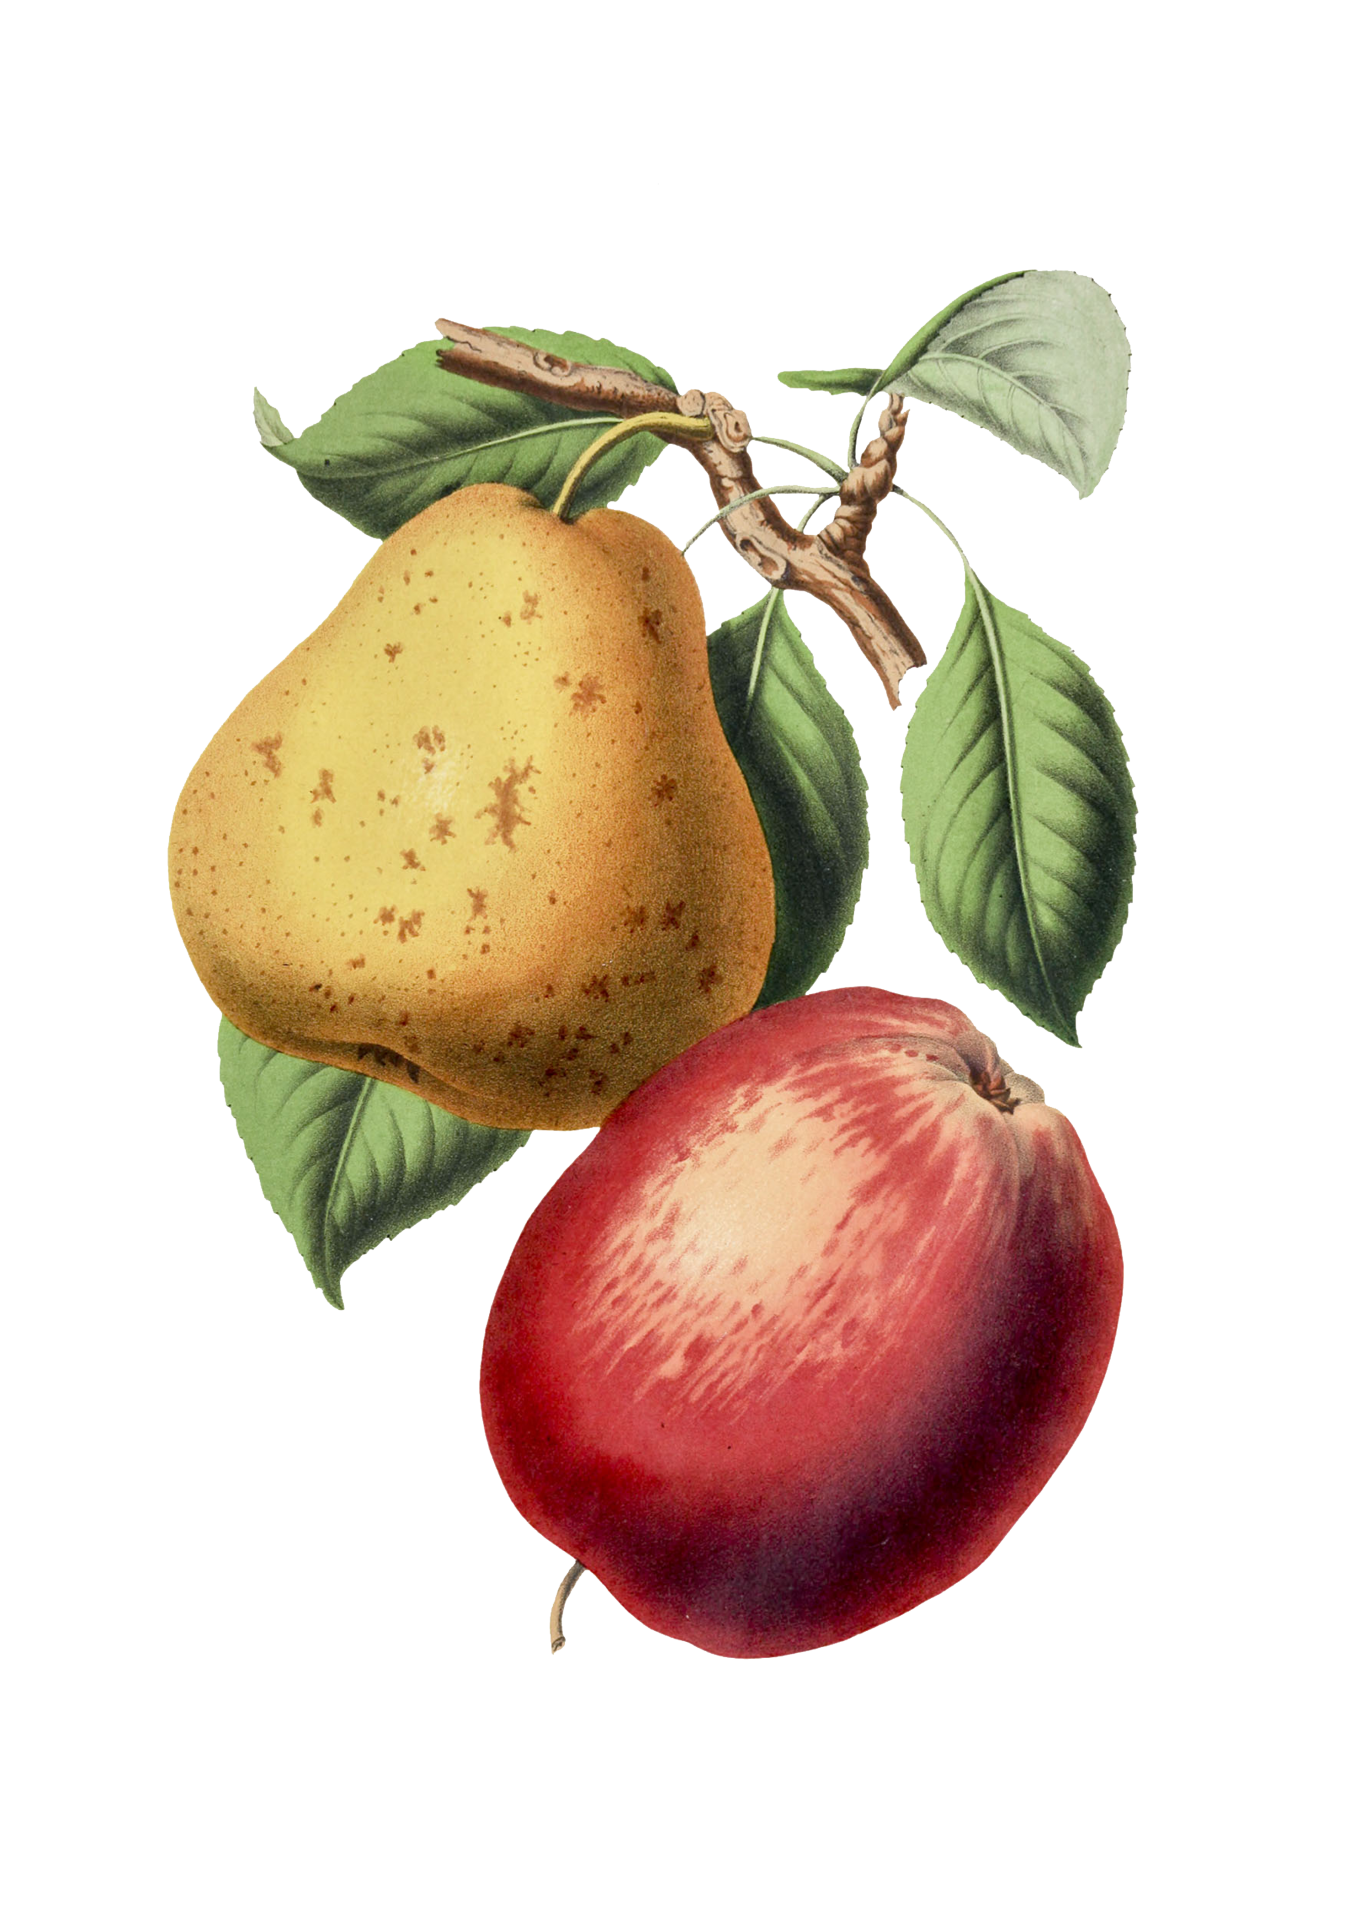 Pear Apple Vintage Illustration